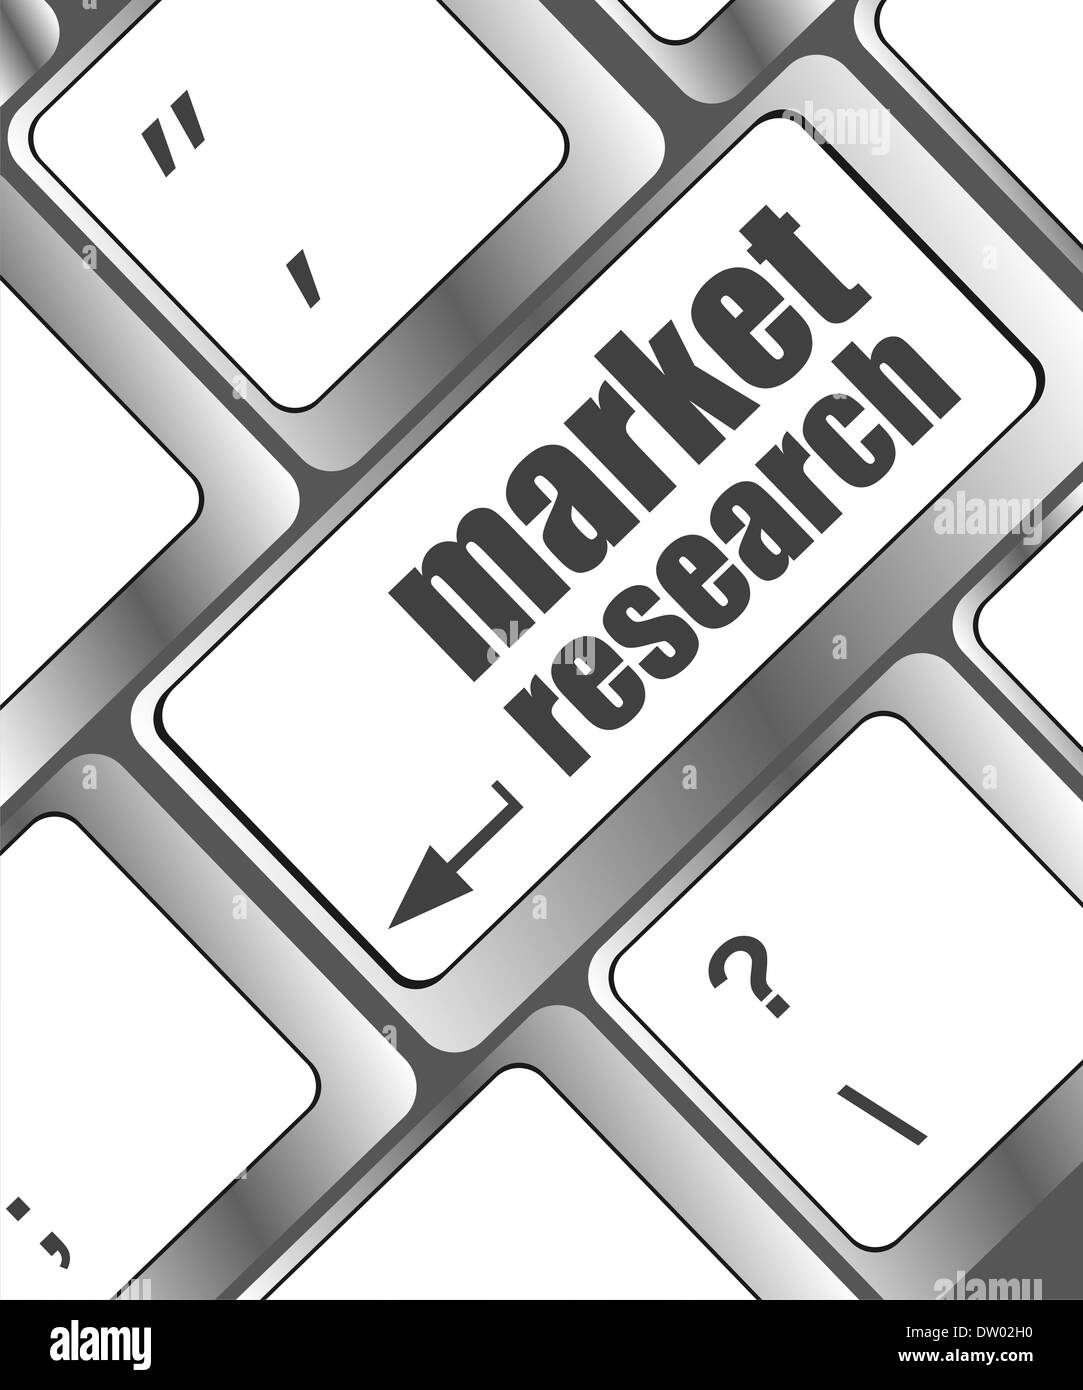 La recherche de marché sur clavier bouton word Banque D'Images